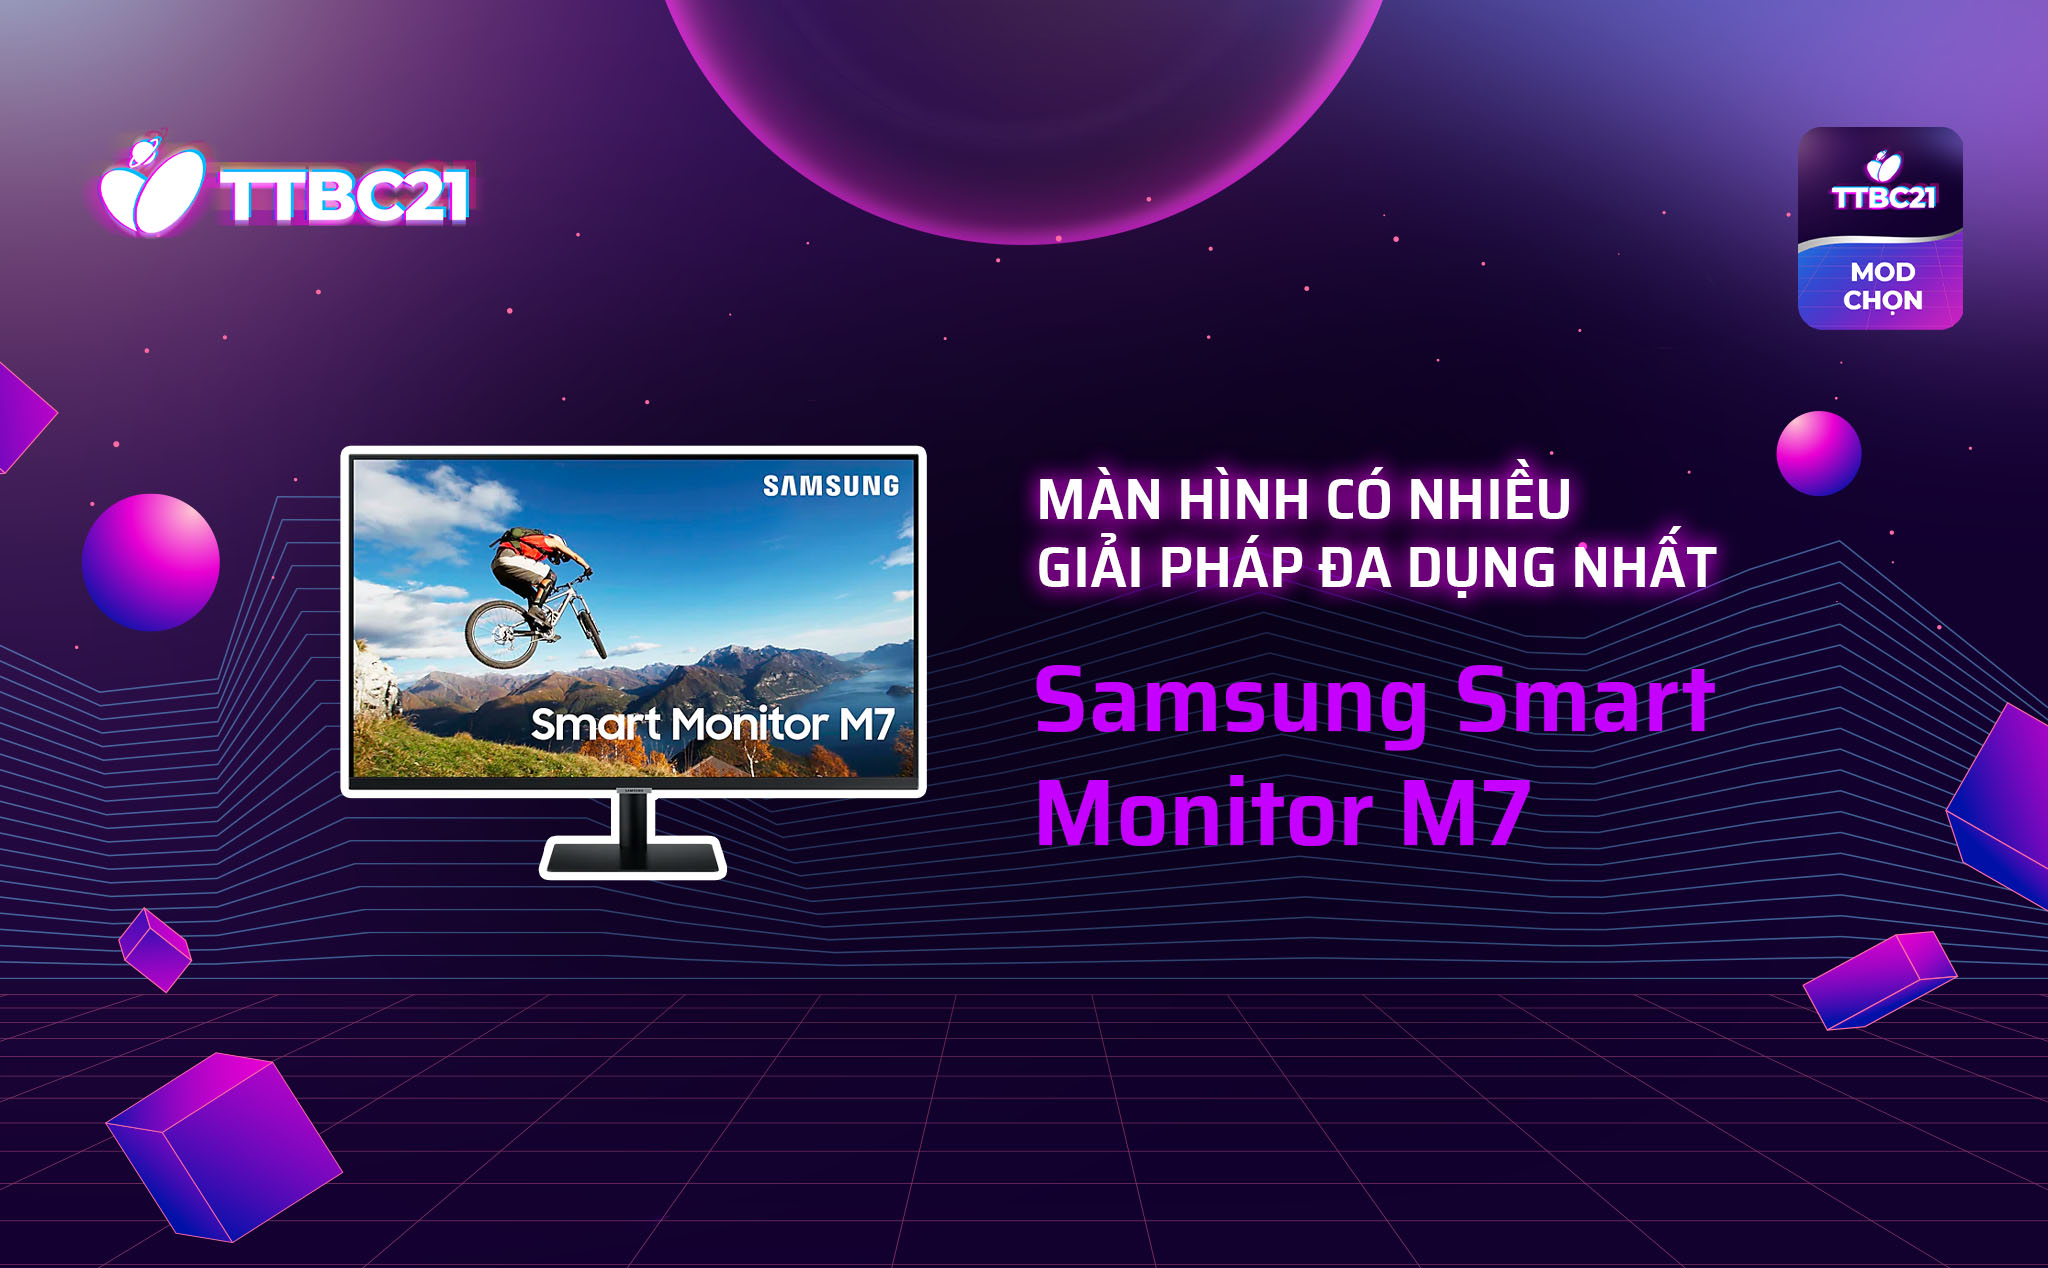 TTBC21 - Mod Choice - Màn hình có nhiều giải pháp đa dụng nhất - Samsung Smart Monitor M7